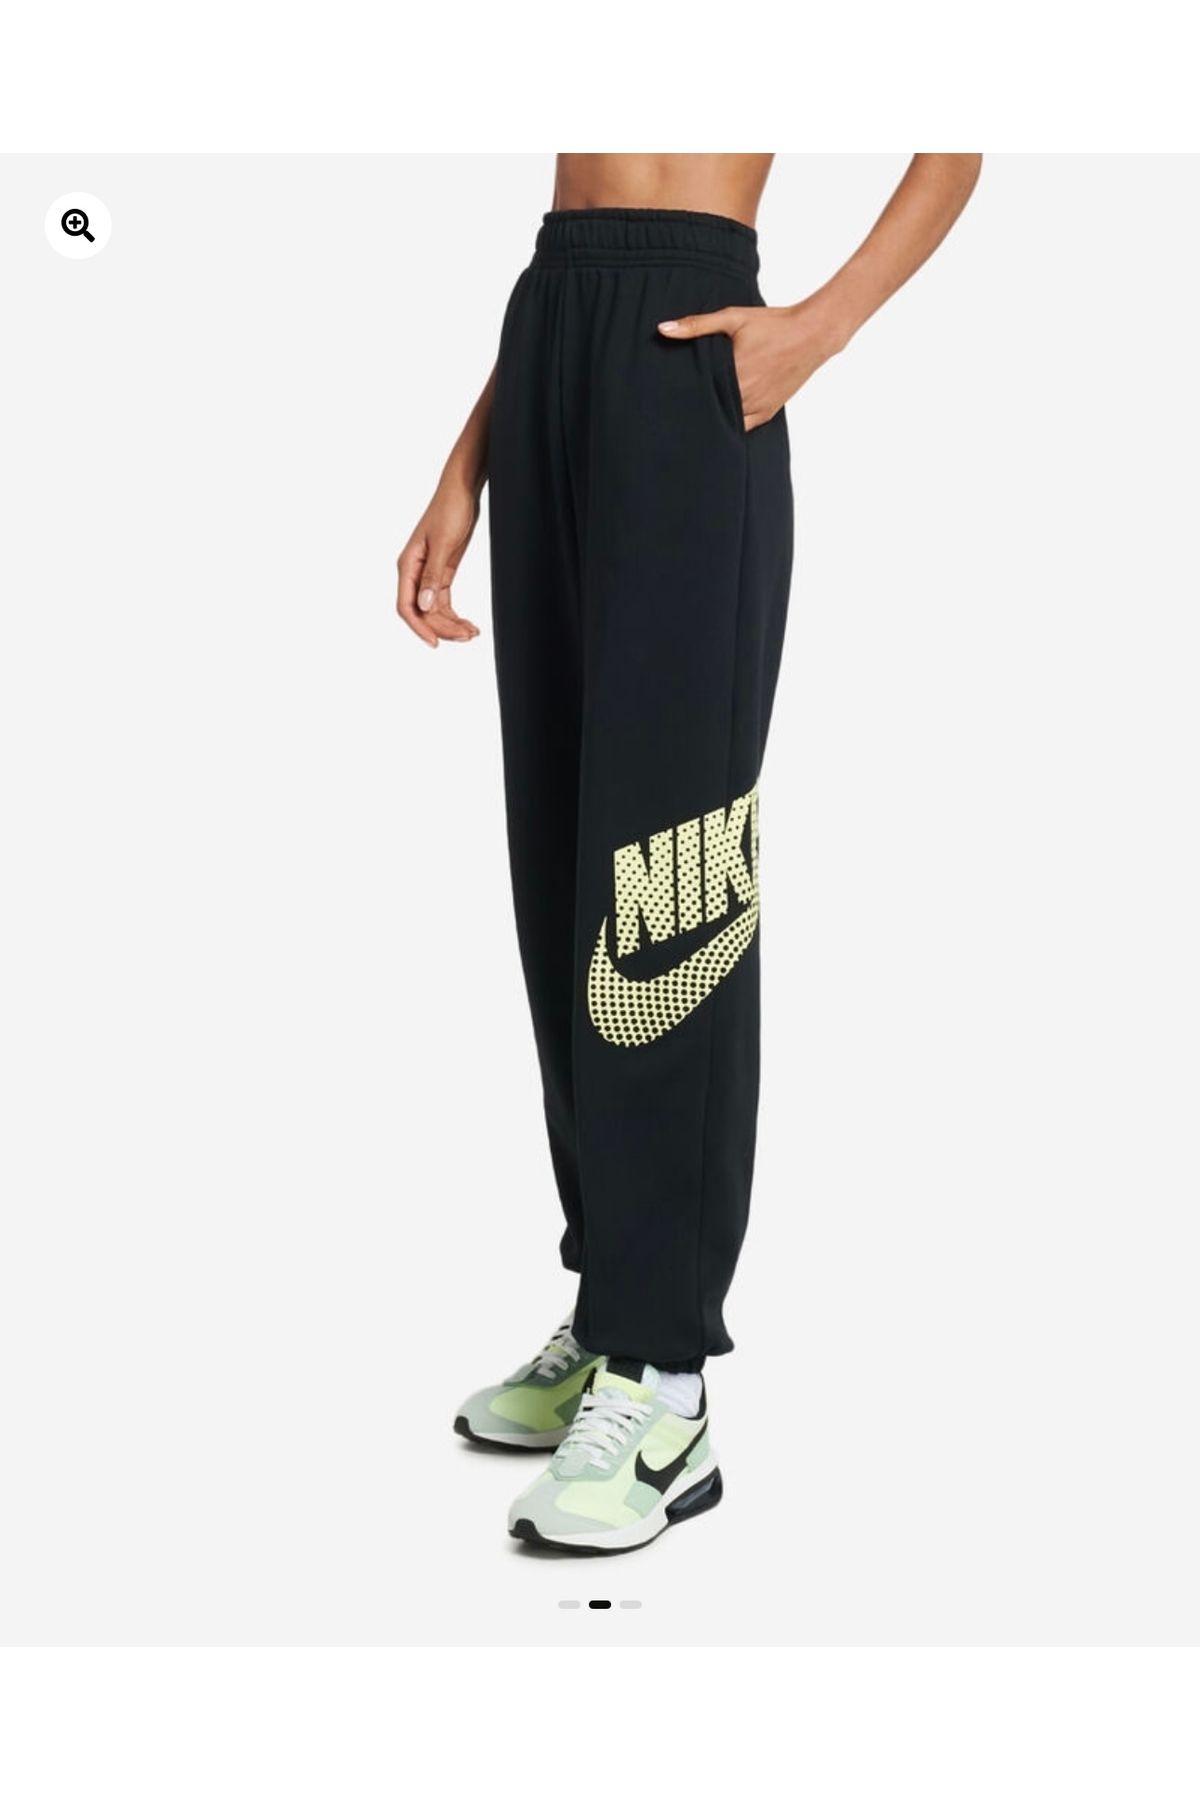 Nike Sportswear Oversized Graphic Fleece Dance Siyah Kadın Eşofman Altı